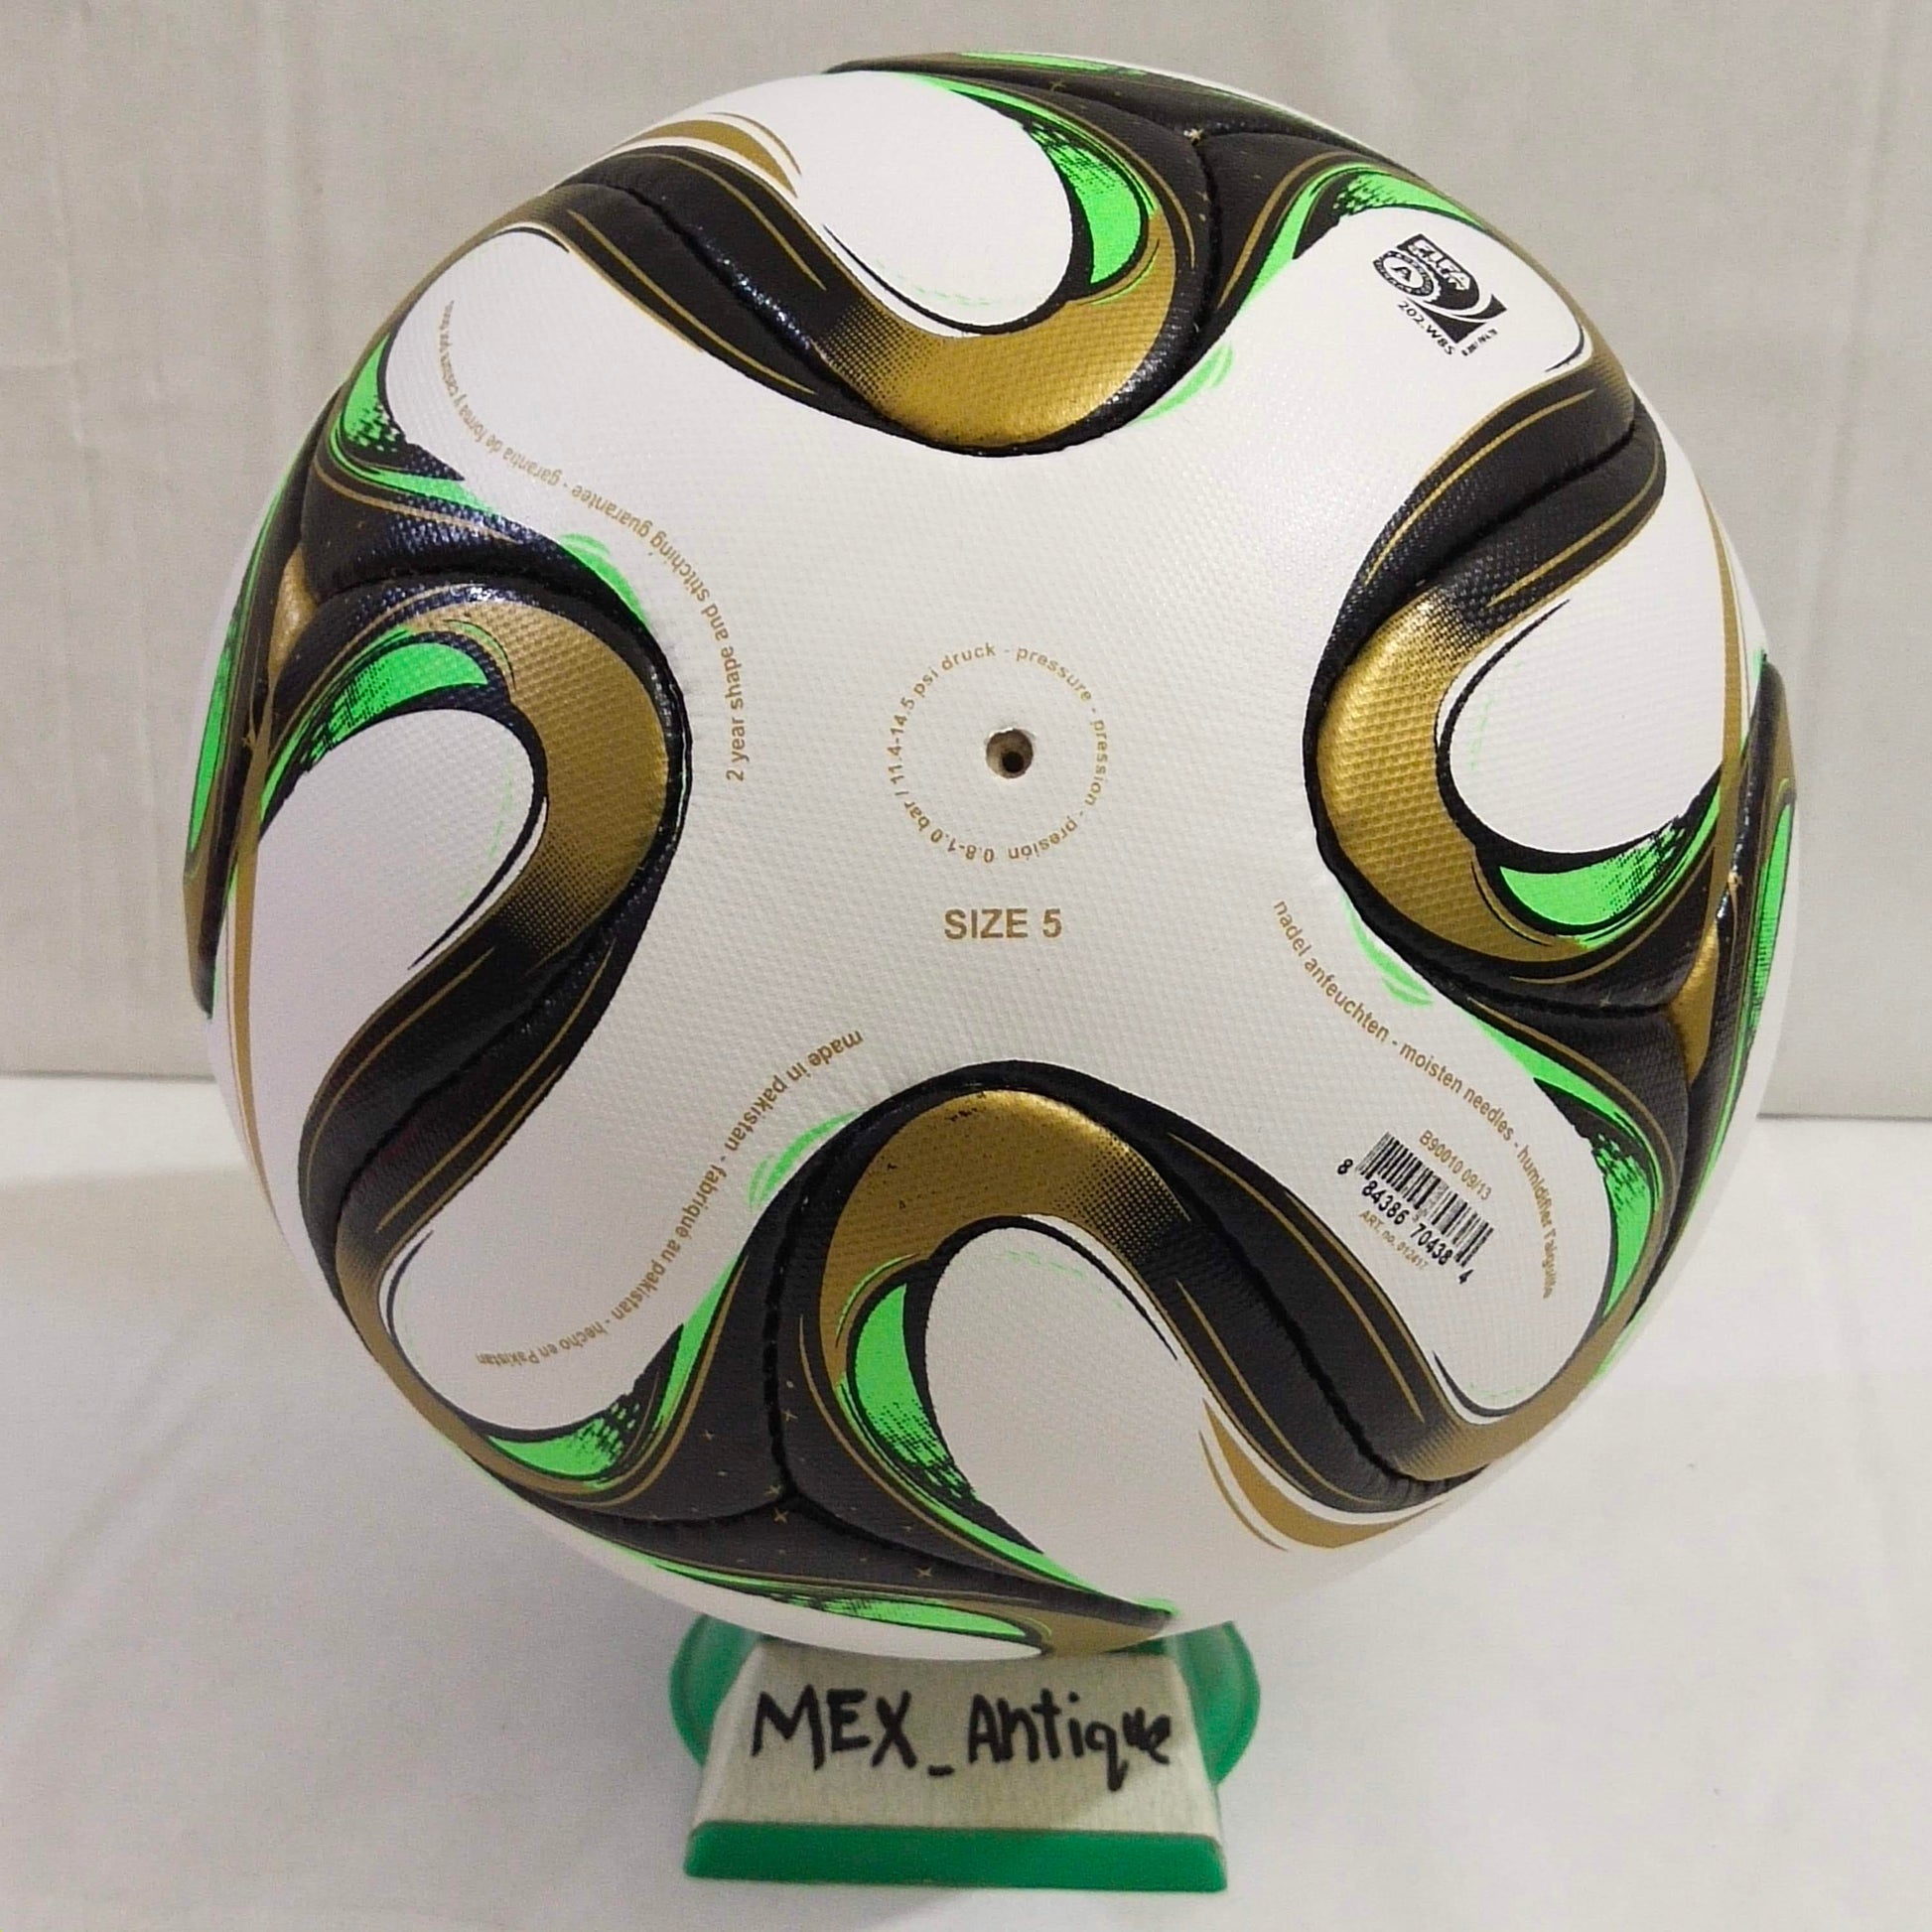 Adidas Brazuca Rio | Final Ball | 2014 | FIFA World Cup Ball | SIZE 5 03